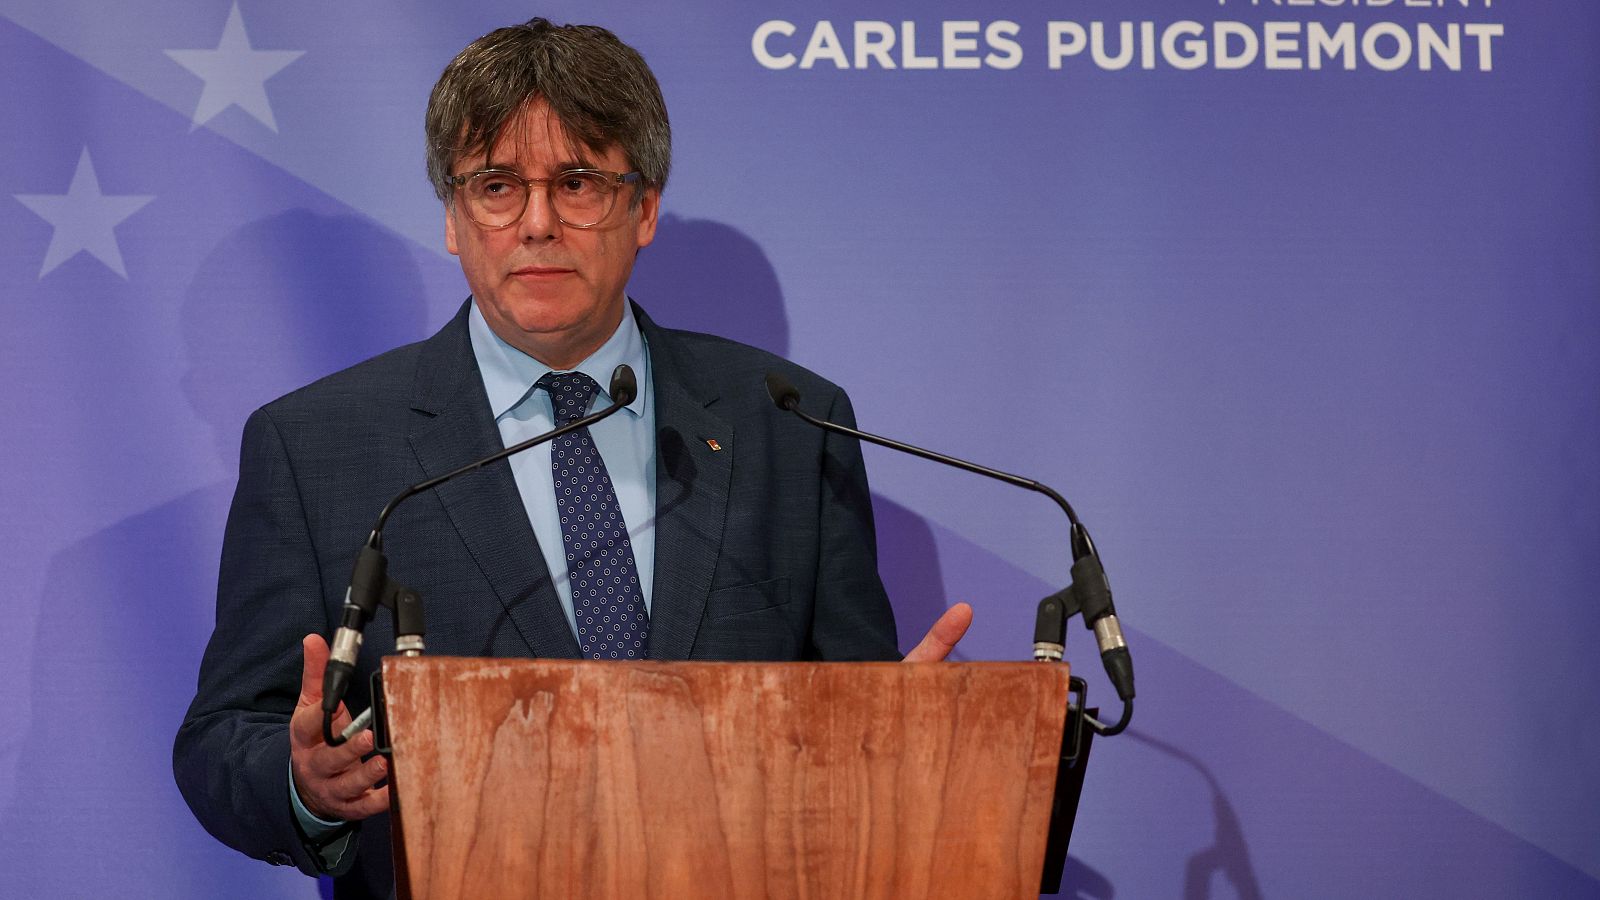 La teniente fiscal del Supremo rechaza investigar a Puigdemont en el caso 'Tsunami' por no hallar indicios